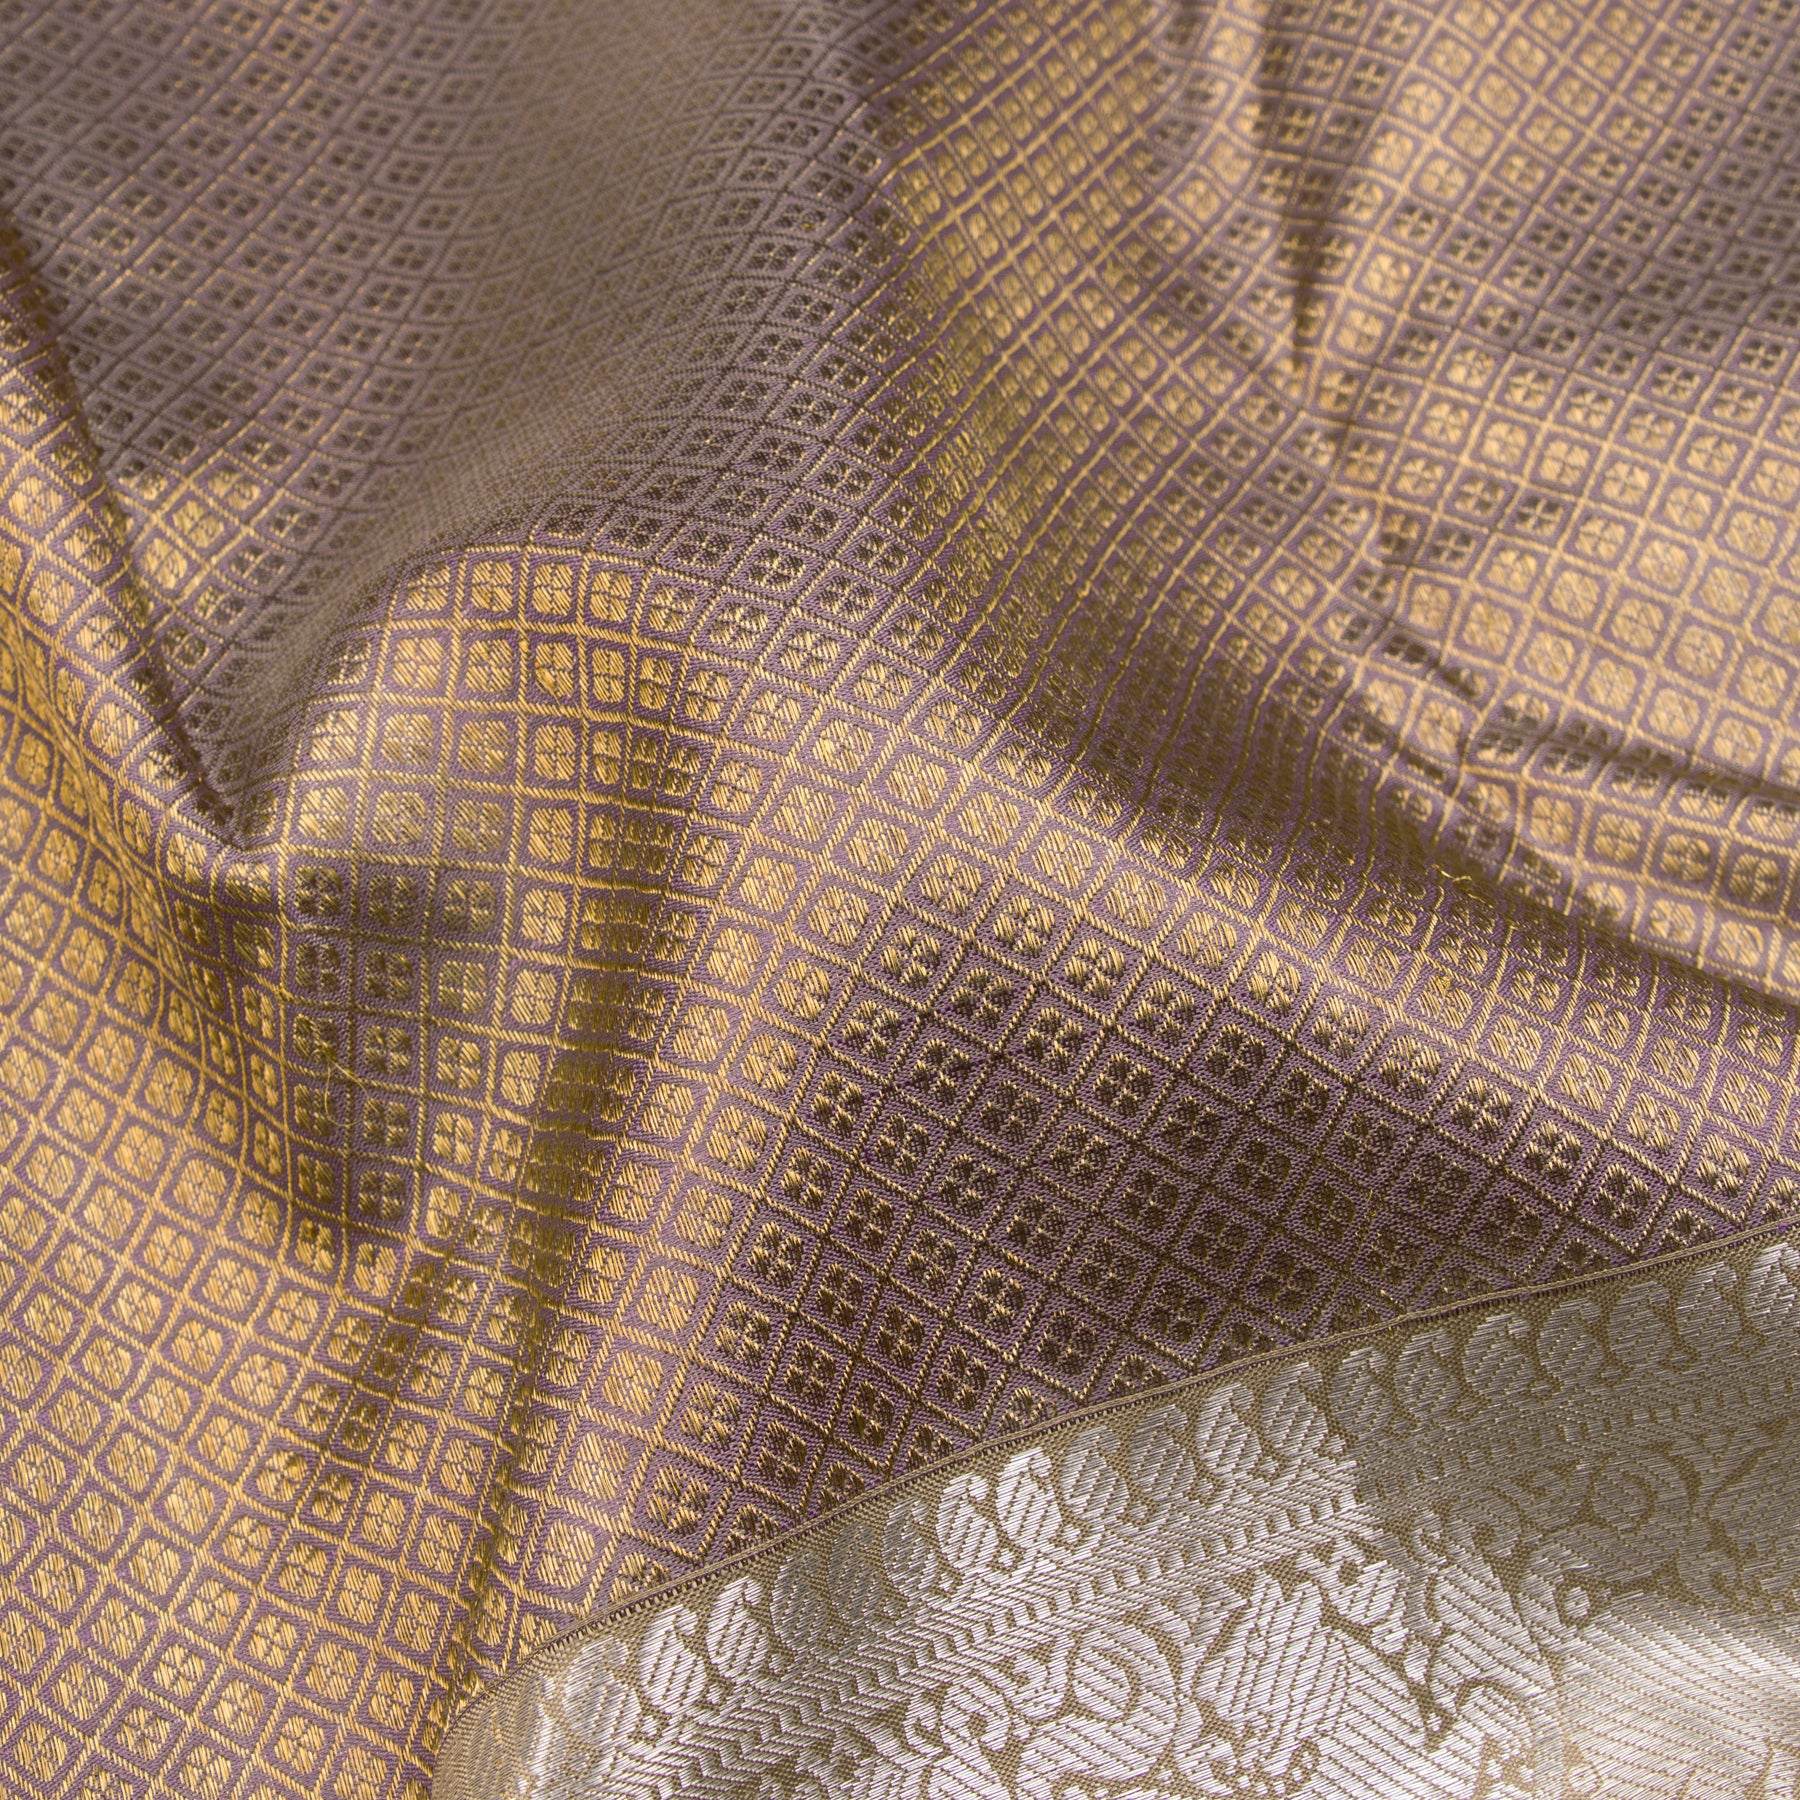 Kanakavalli Kanjivaram Silk Sari 23-110-HS001-03750 - Fabric View